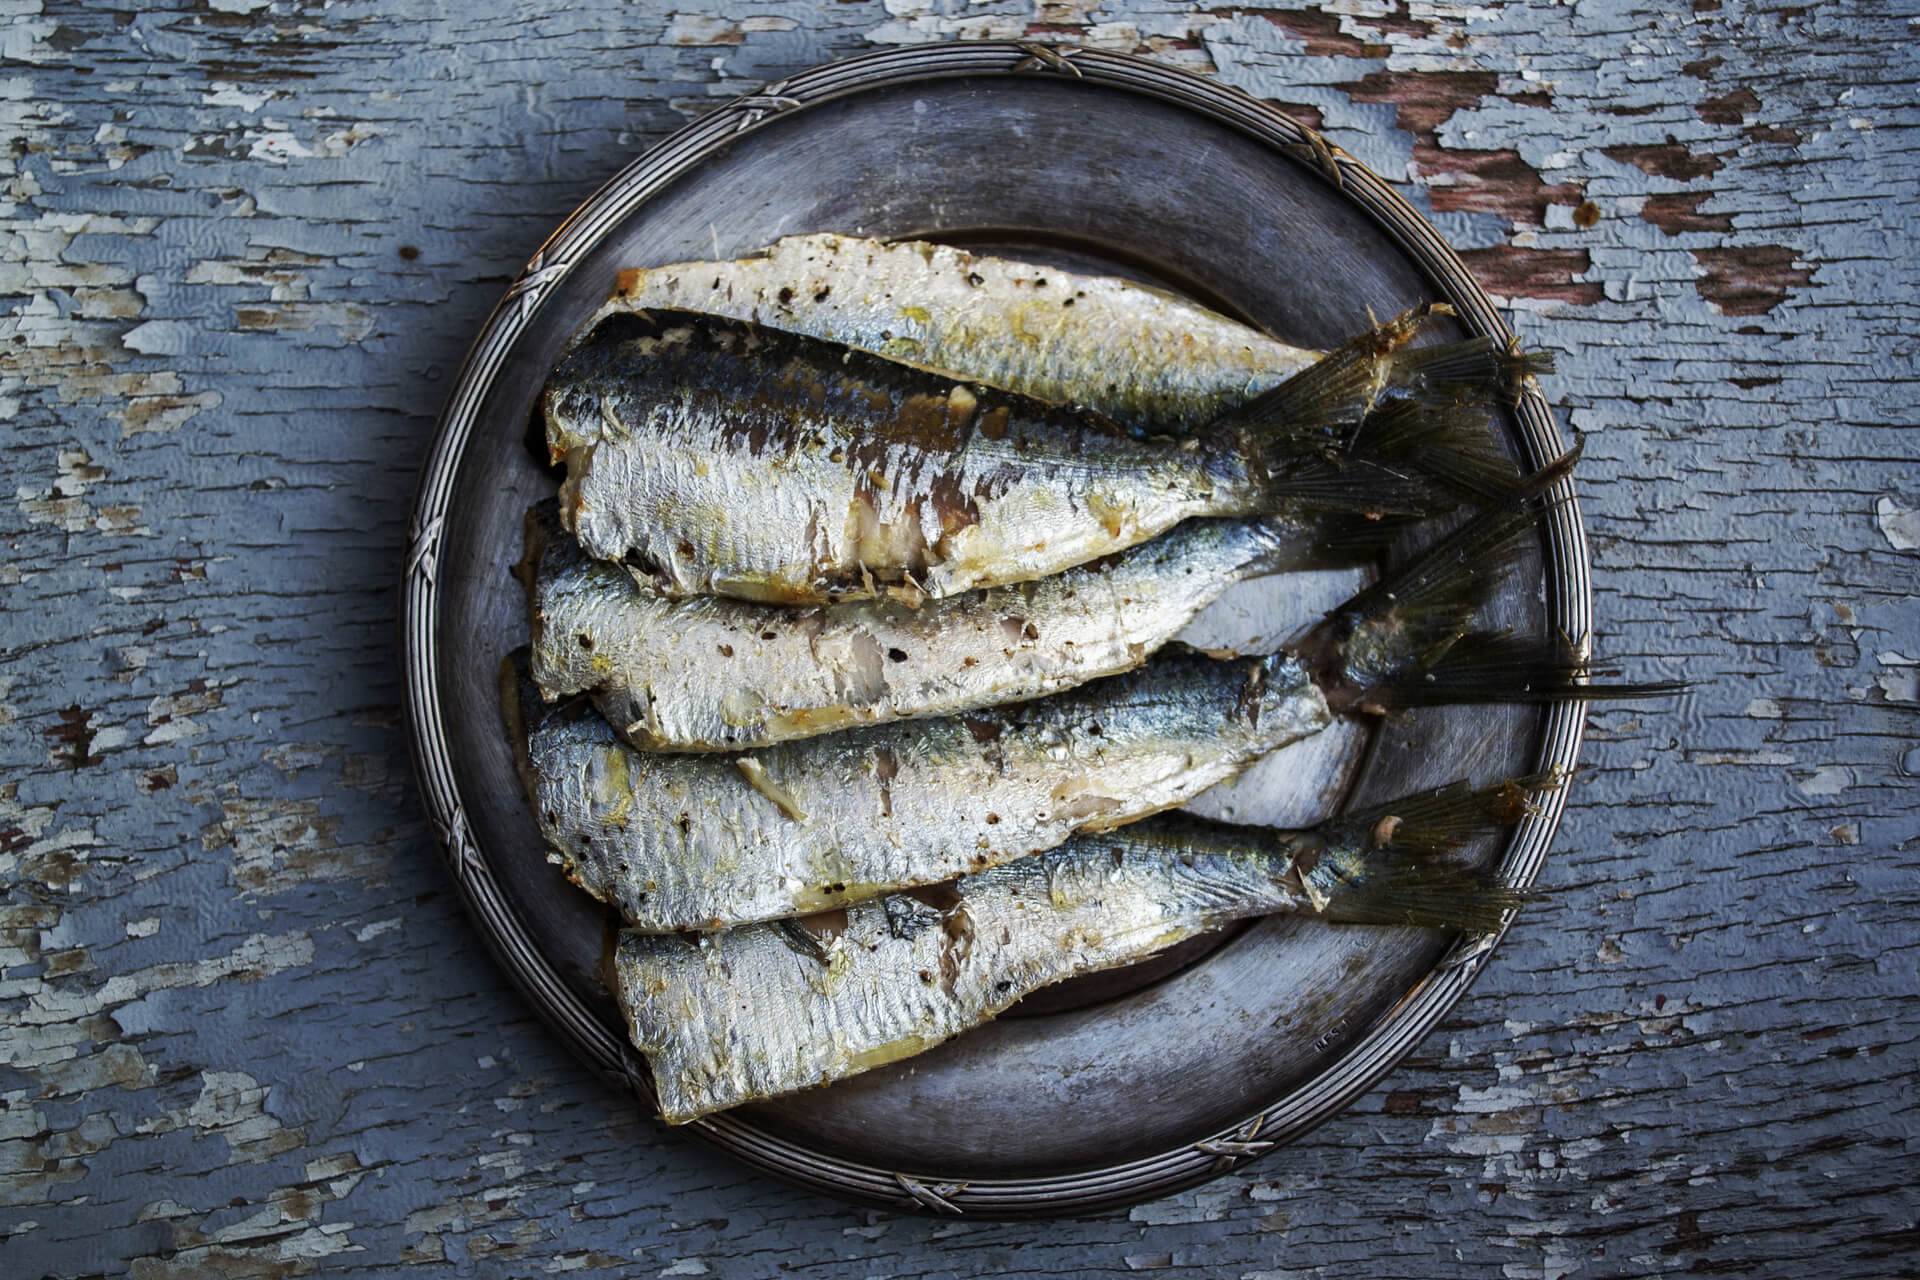 Valori nutrizionali del pesce: perché mangiarlo regolarmente fa bene